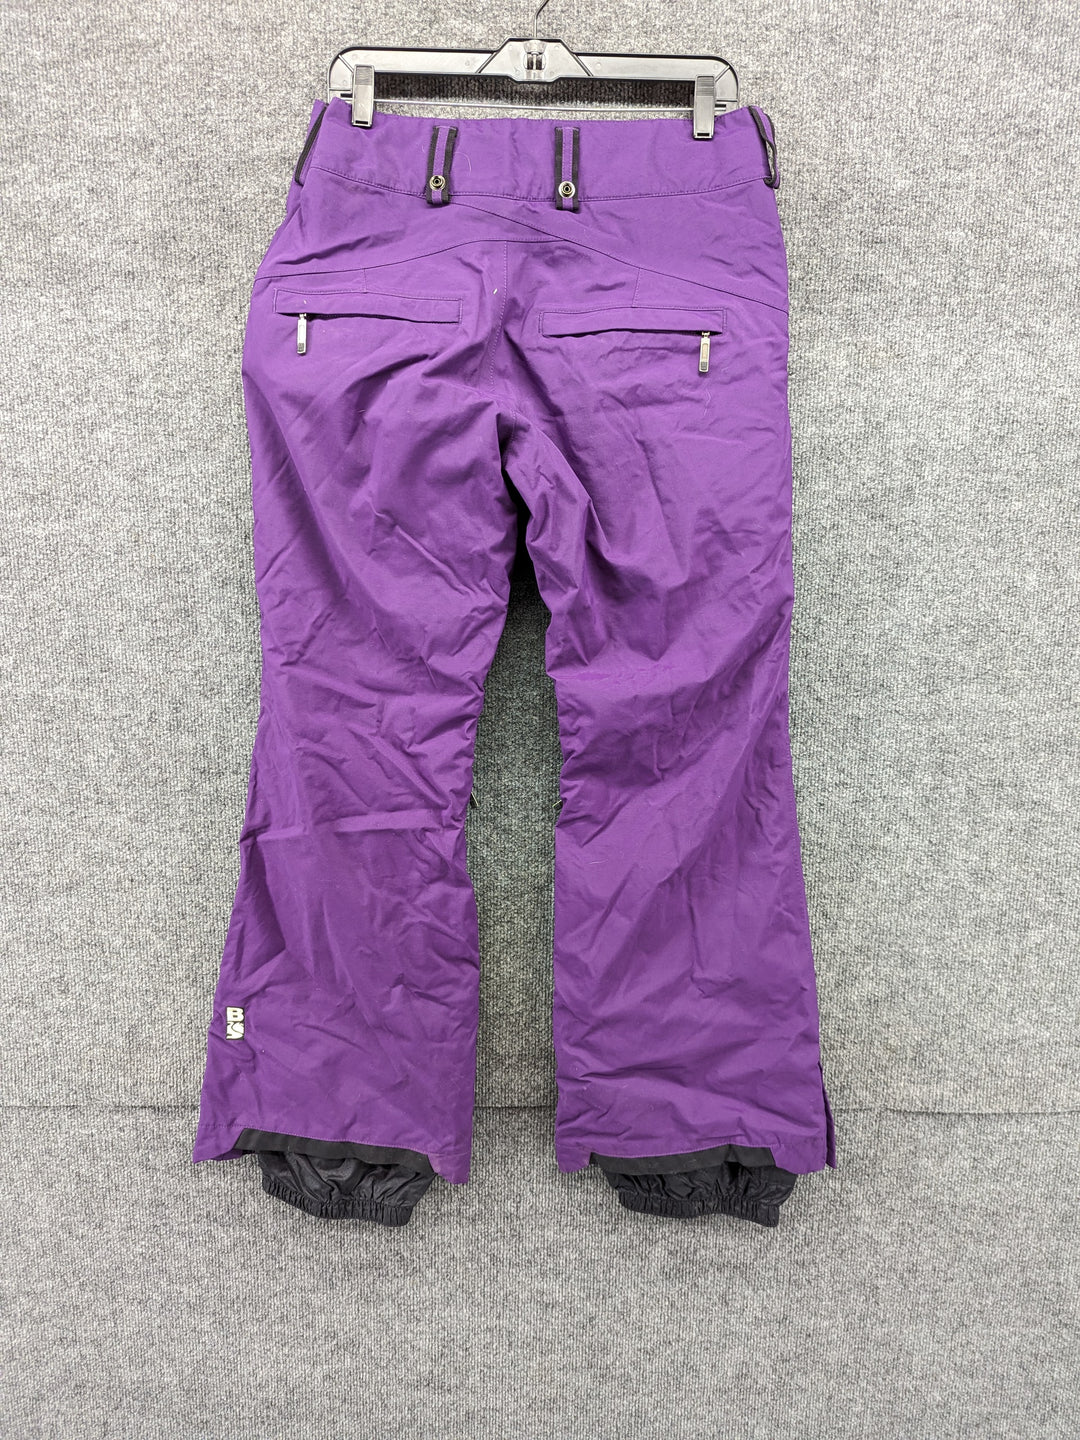 BonFire Size W Large Women's Ski Pants – Rambleraven Gear Trader